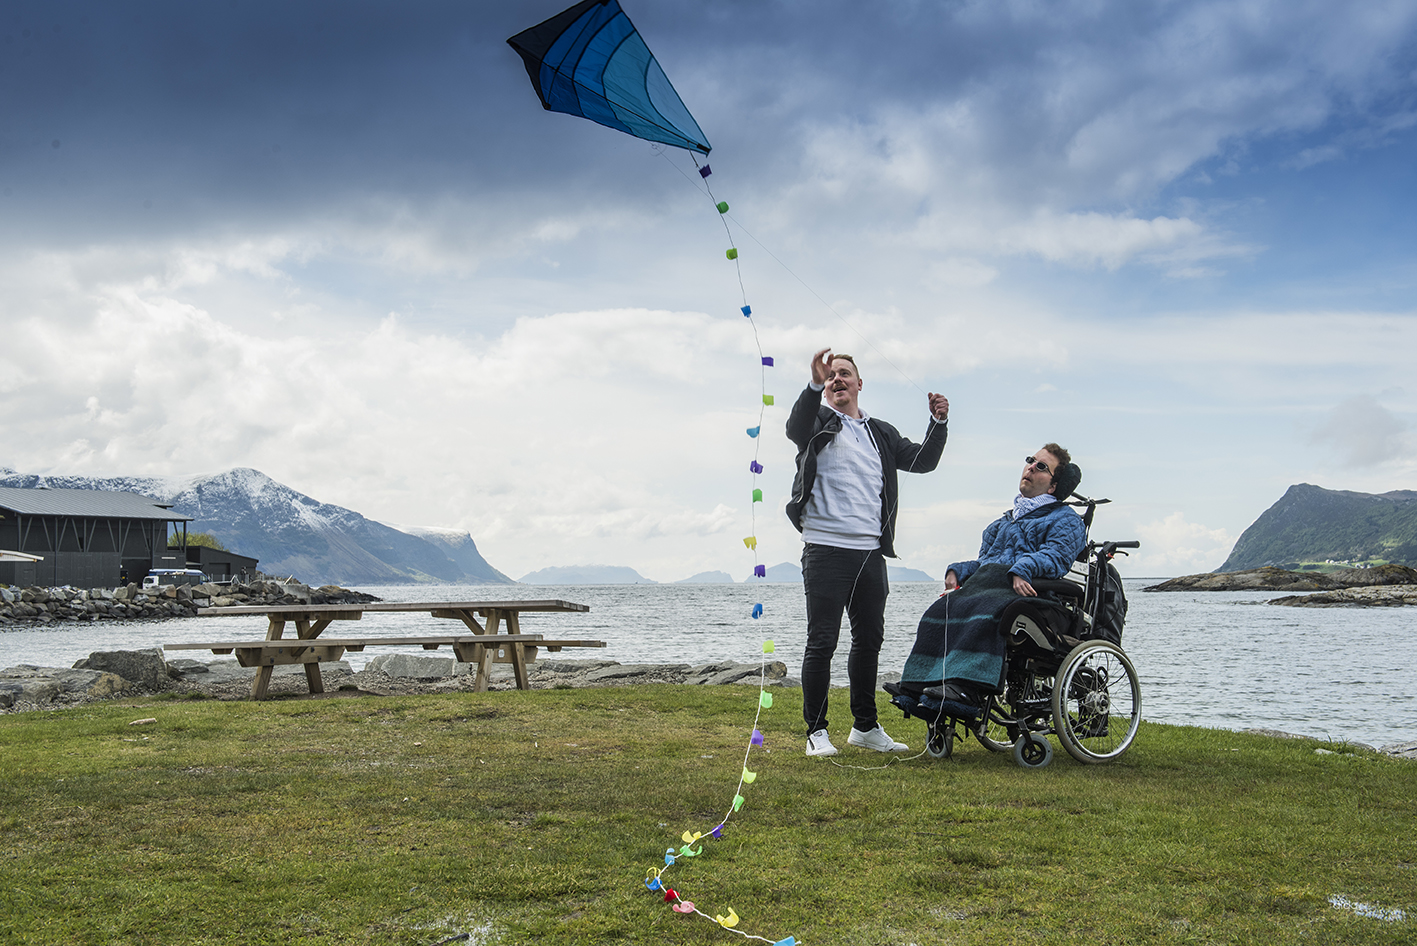 Mannlig assistent hjelper mann i rullestol med å fly en drage. I bakgrunnen ser man flotte fjell og sjø.